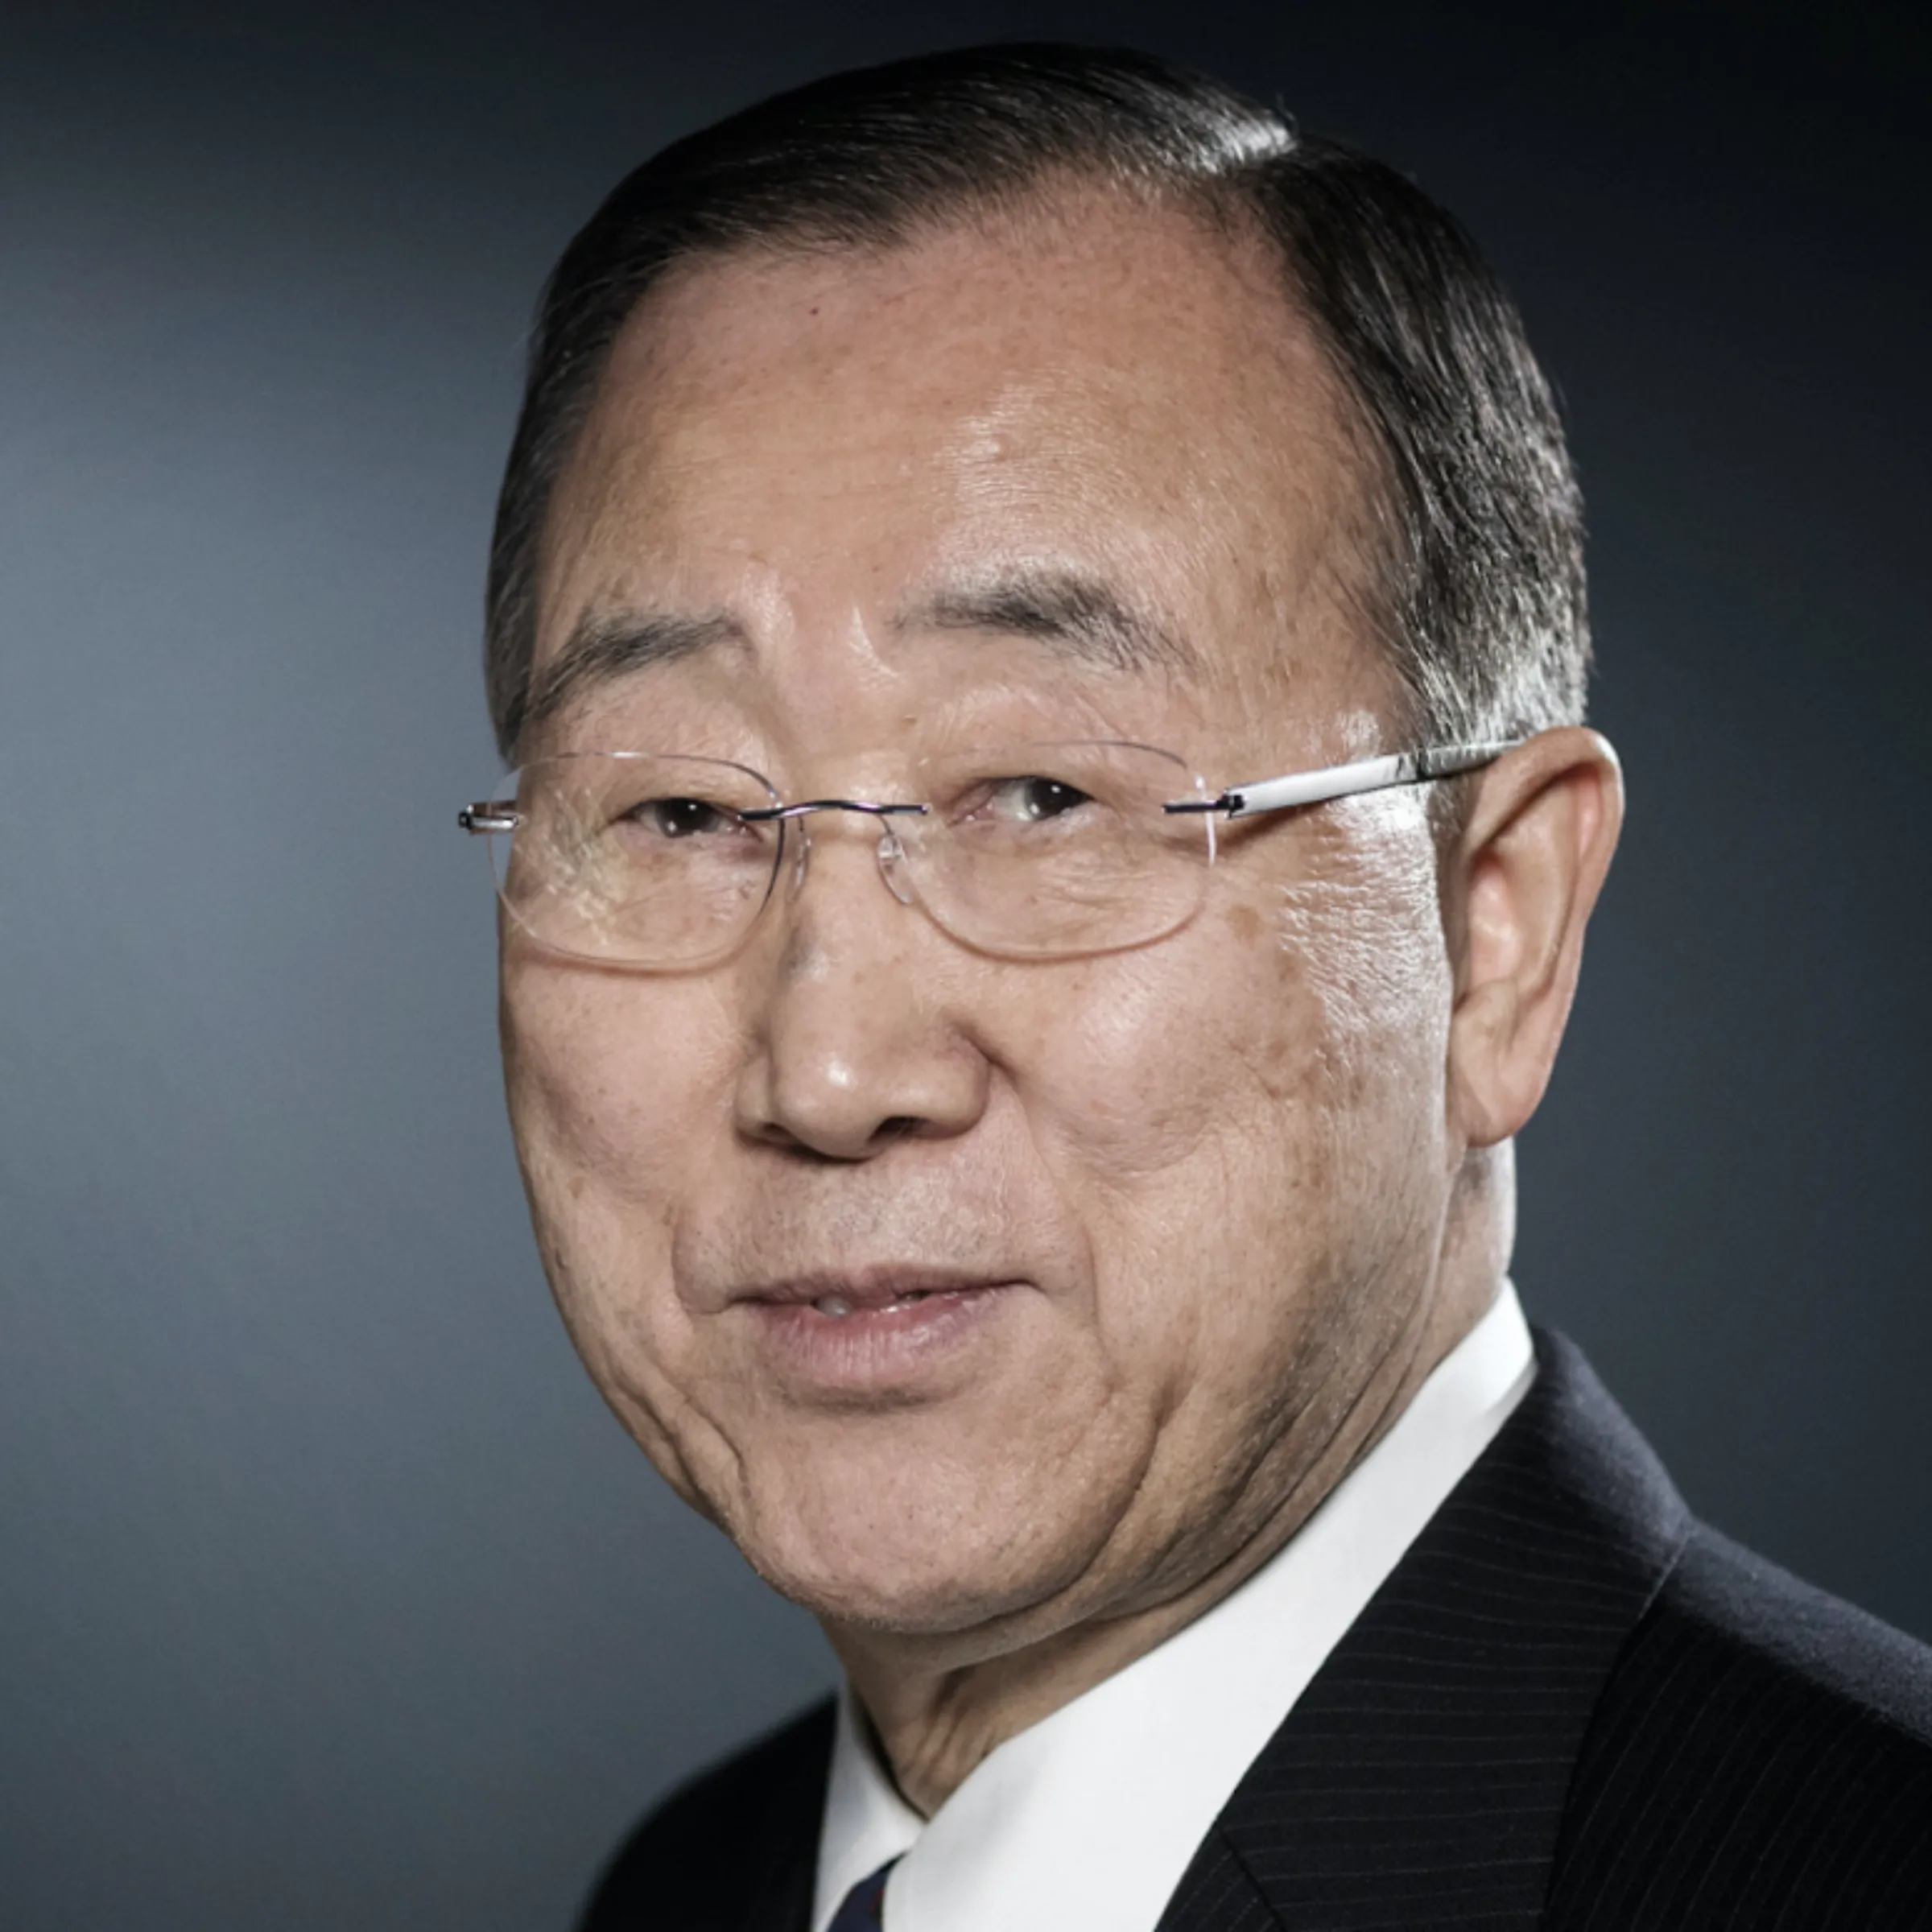 Ban Ki-moon profile picture